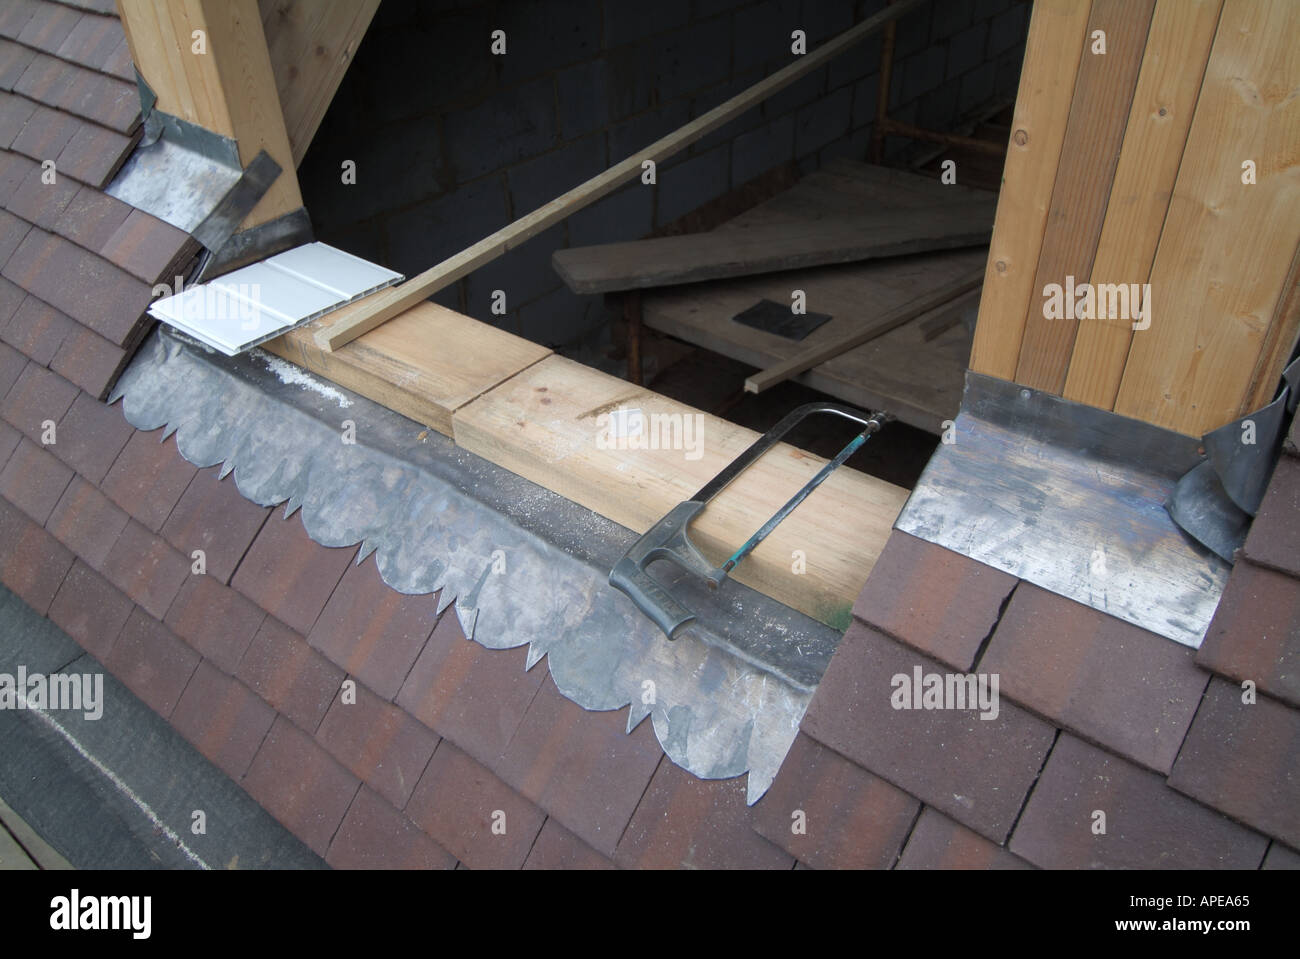 Gros détails de plomb clignotant vêtu autour de la fenêtre de dormer et des matériaux de construction de tuiles de toit dans la nouvelle maison indépendante sous la construction Angleterre Royaume-Uni Banque D'Images